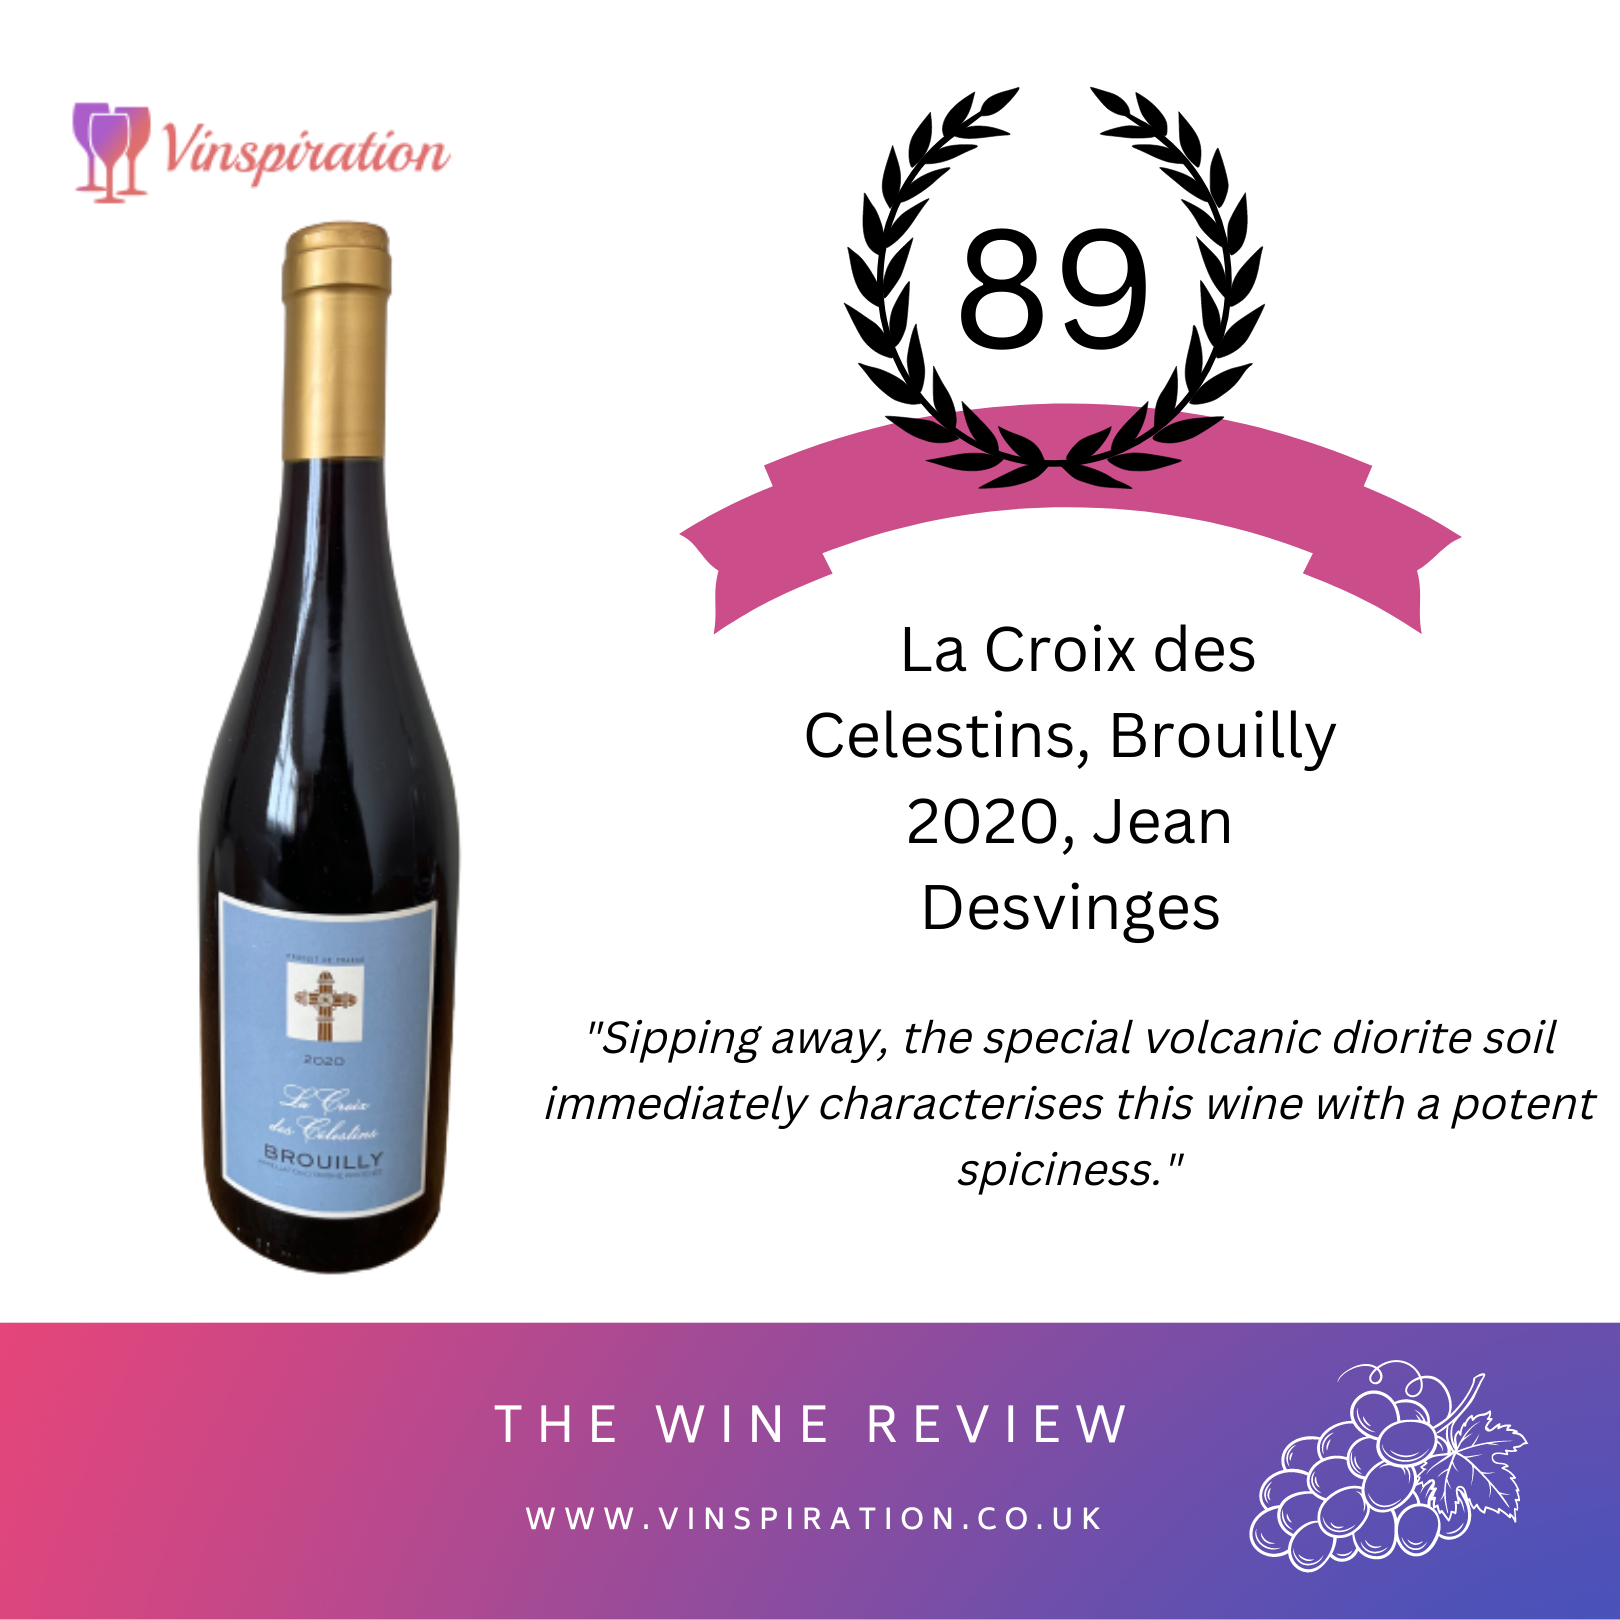 Review: Desvinges, - Brouilly des La Célestins, Jean Croix Vinspiration 2020